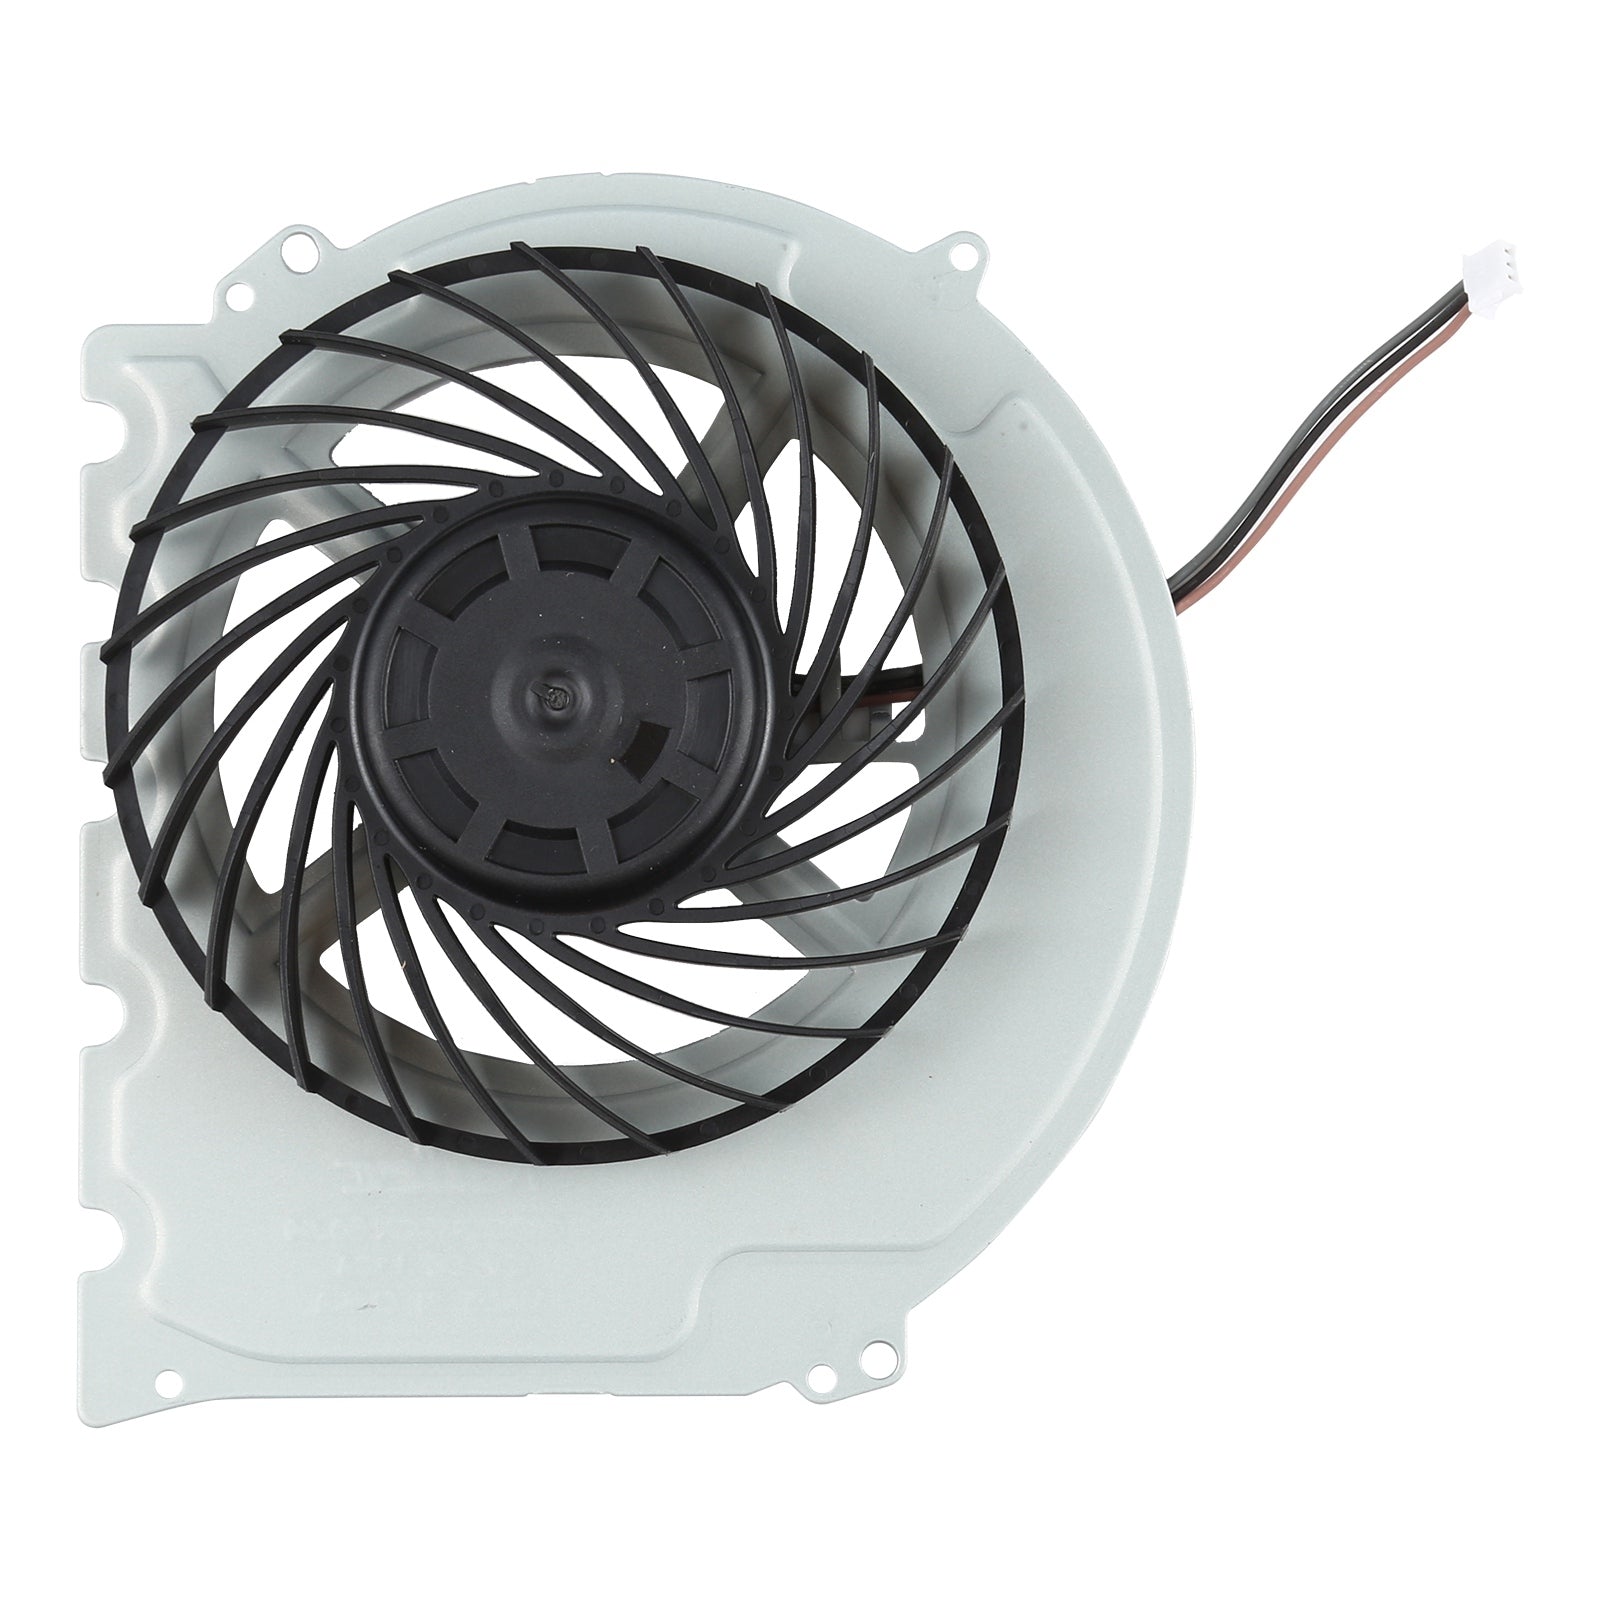 Dissipateur thermique du ventilateur interne Sony Play Station 4 PS4 Slim